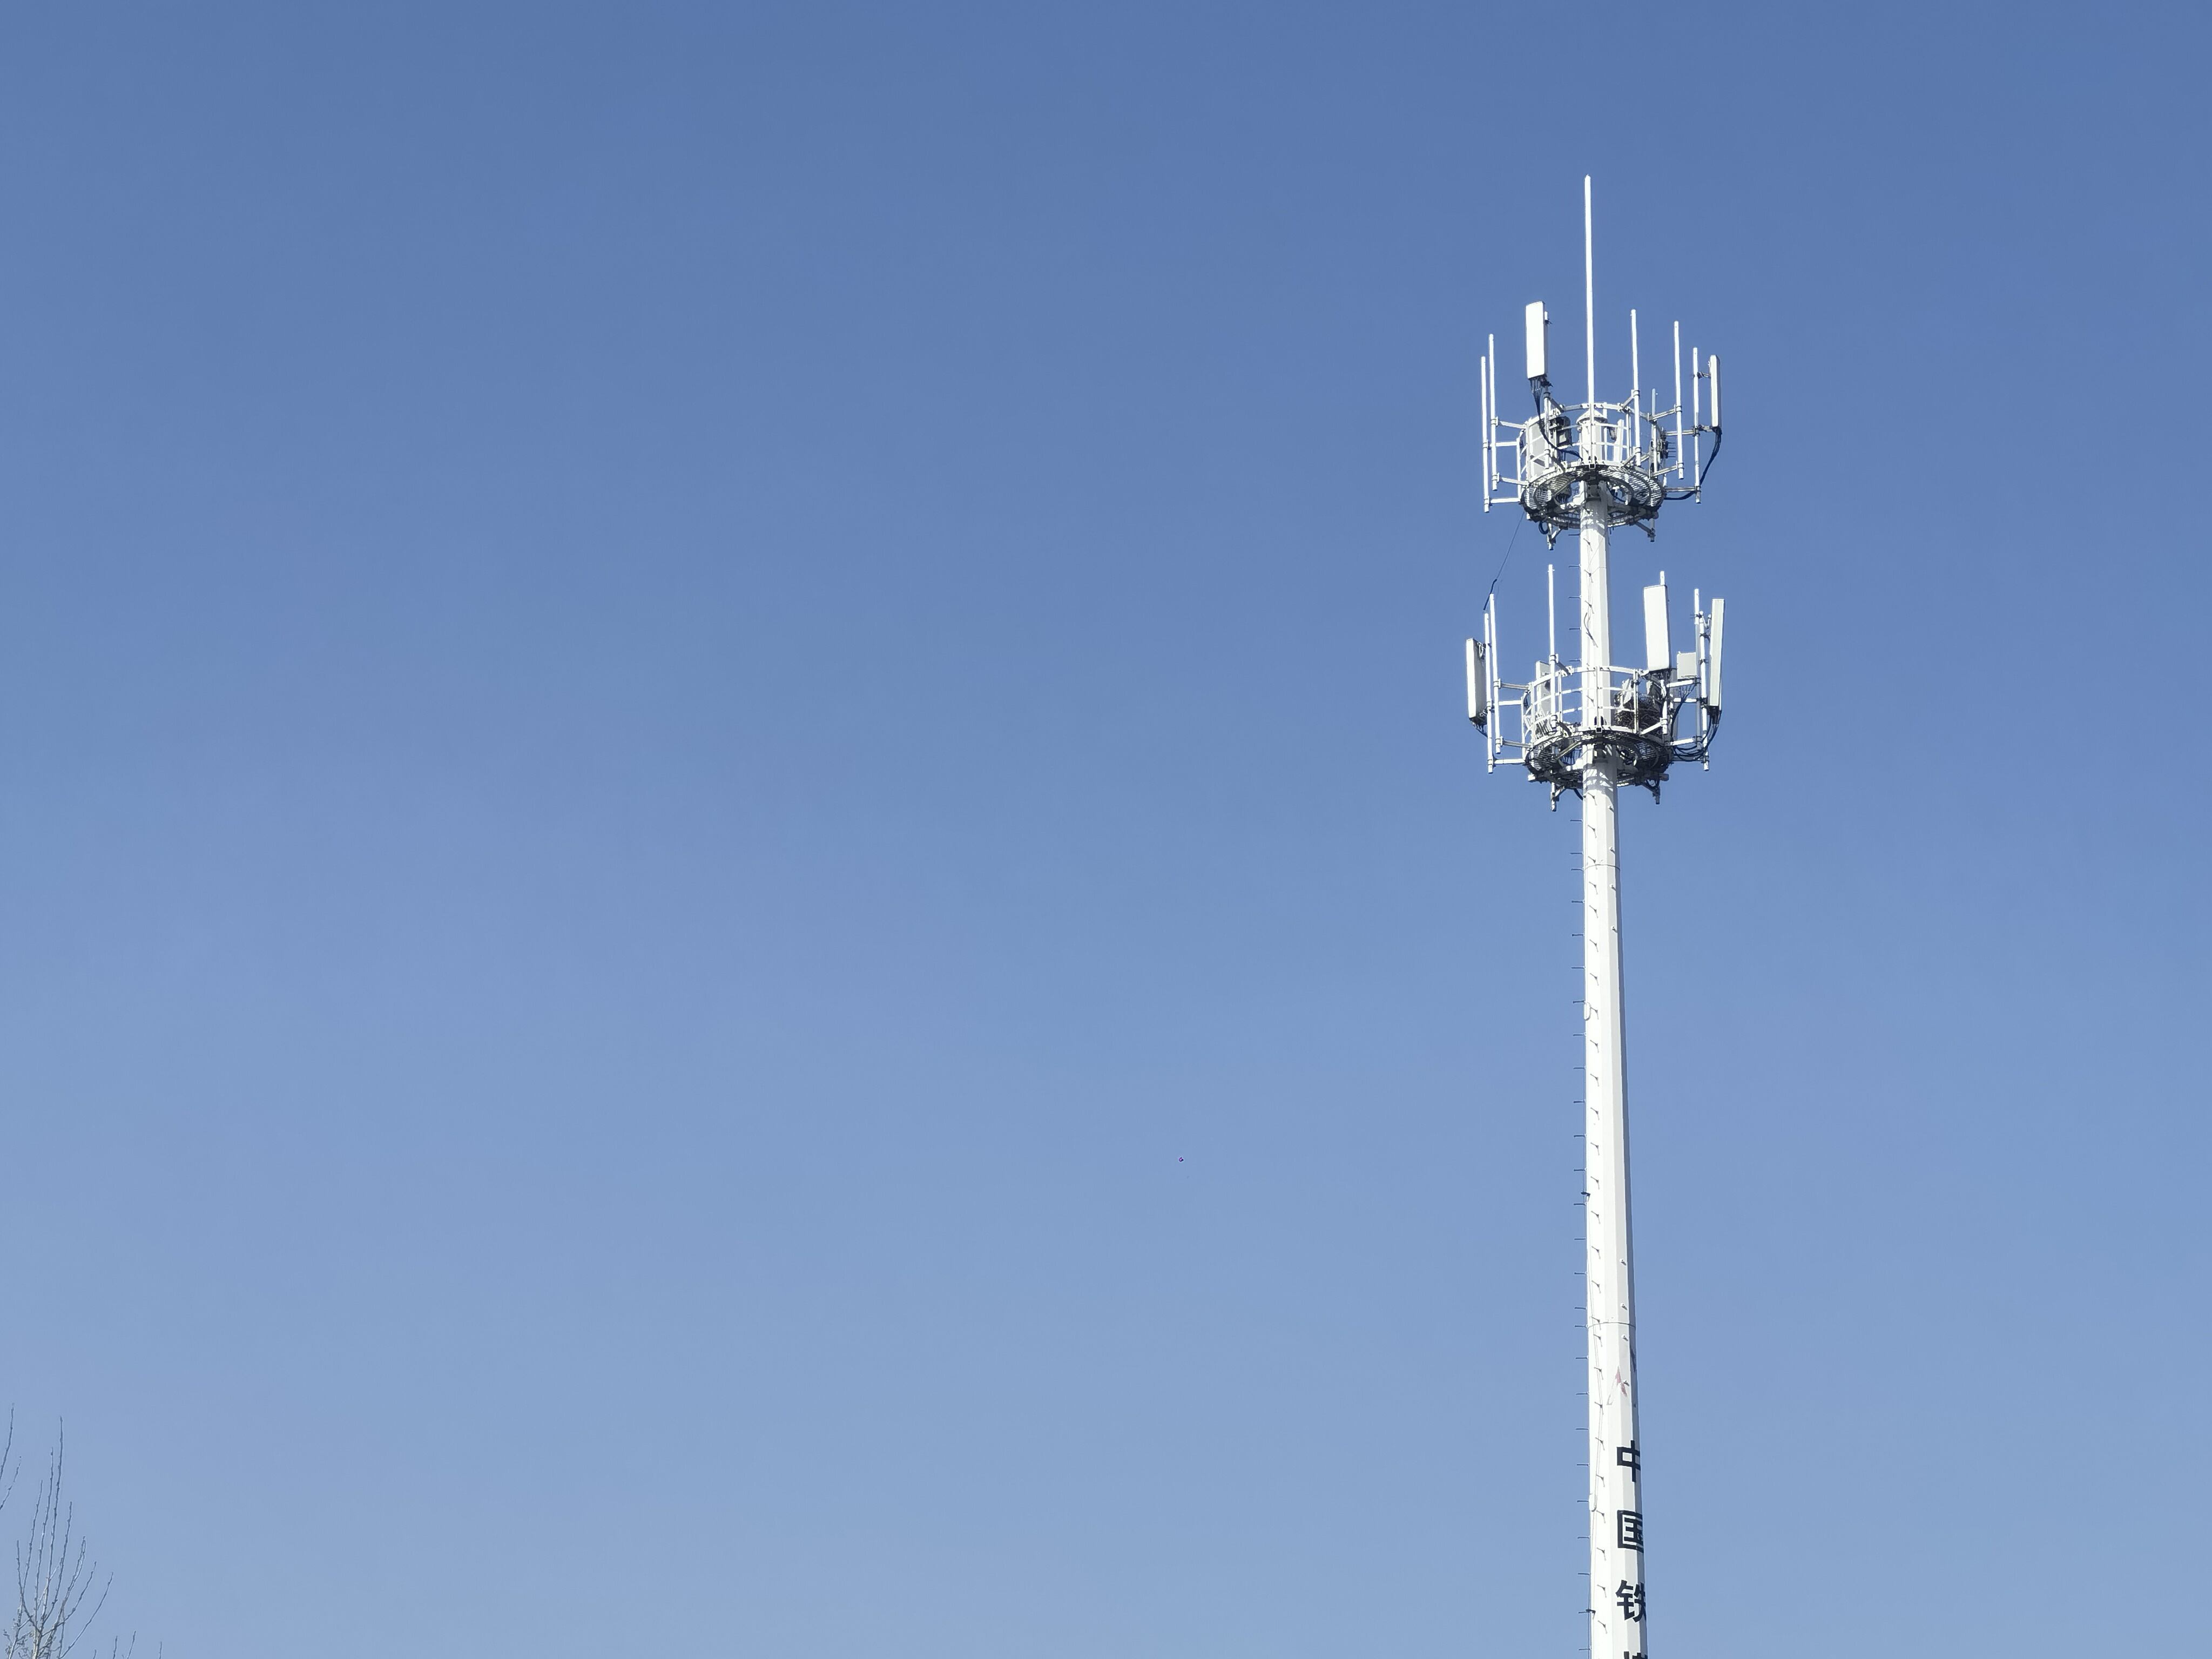 Détails de transmission de communication d'antenne de tour unipolaire